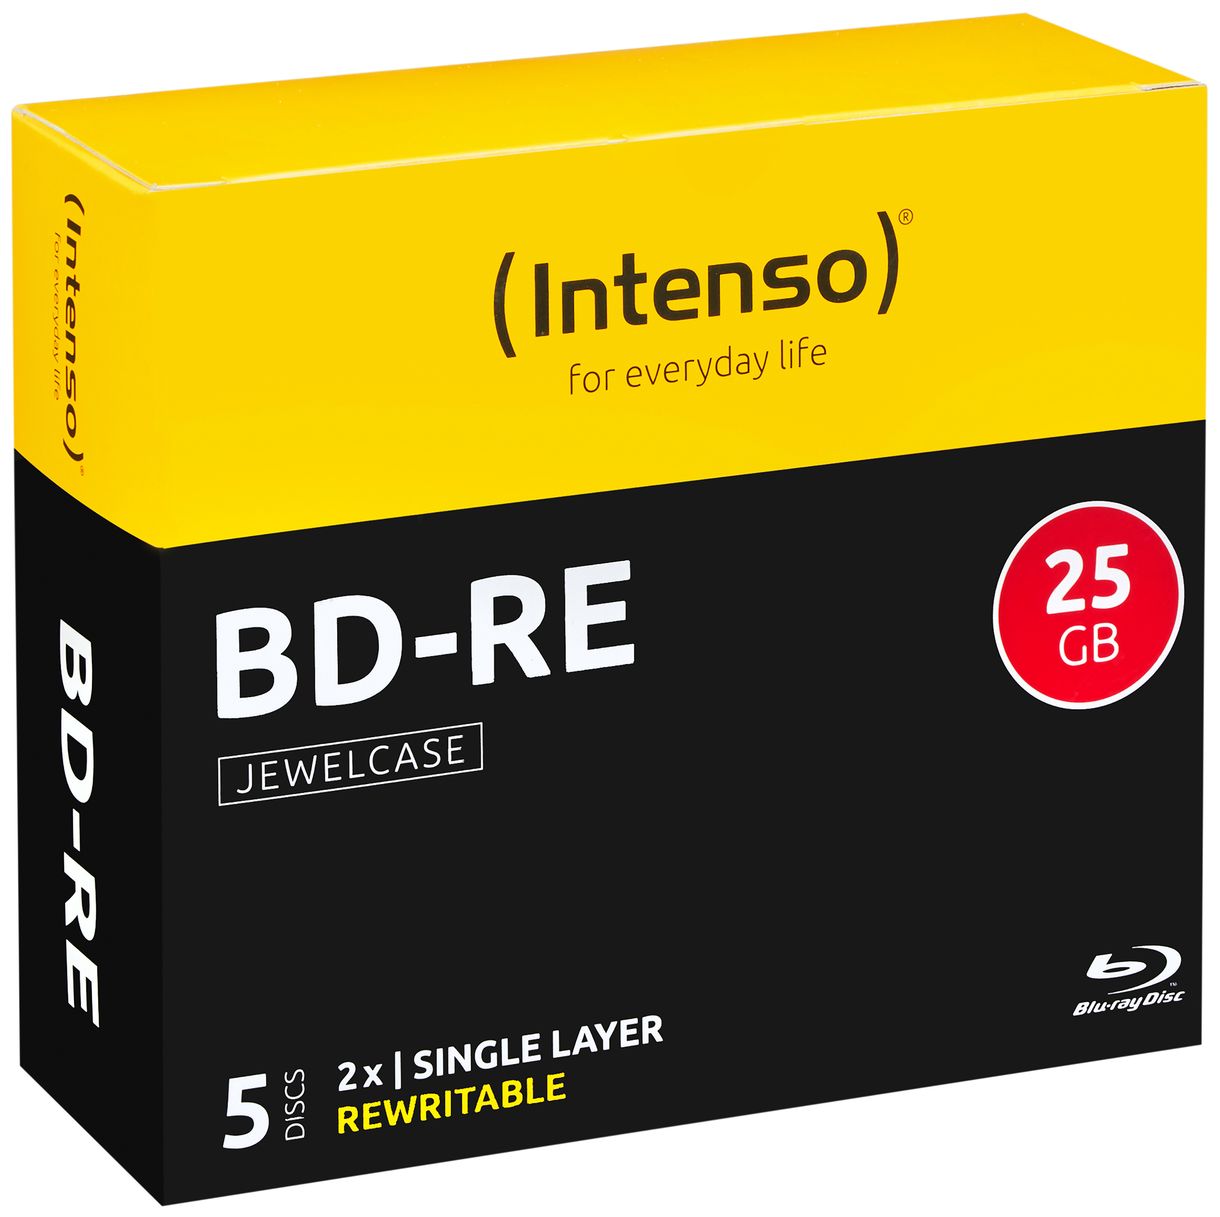 BD-RE Blu-ray Rohlinge 25GB 5er Jewelcase Schreibgeschwindigkeit 2x 